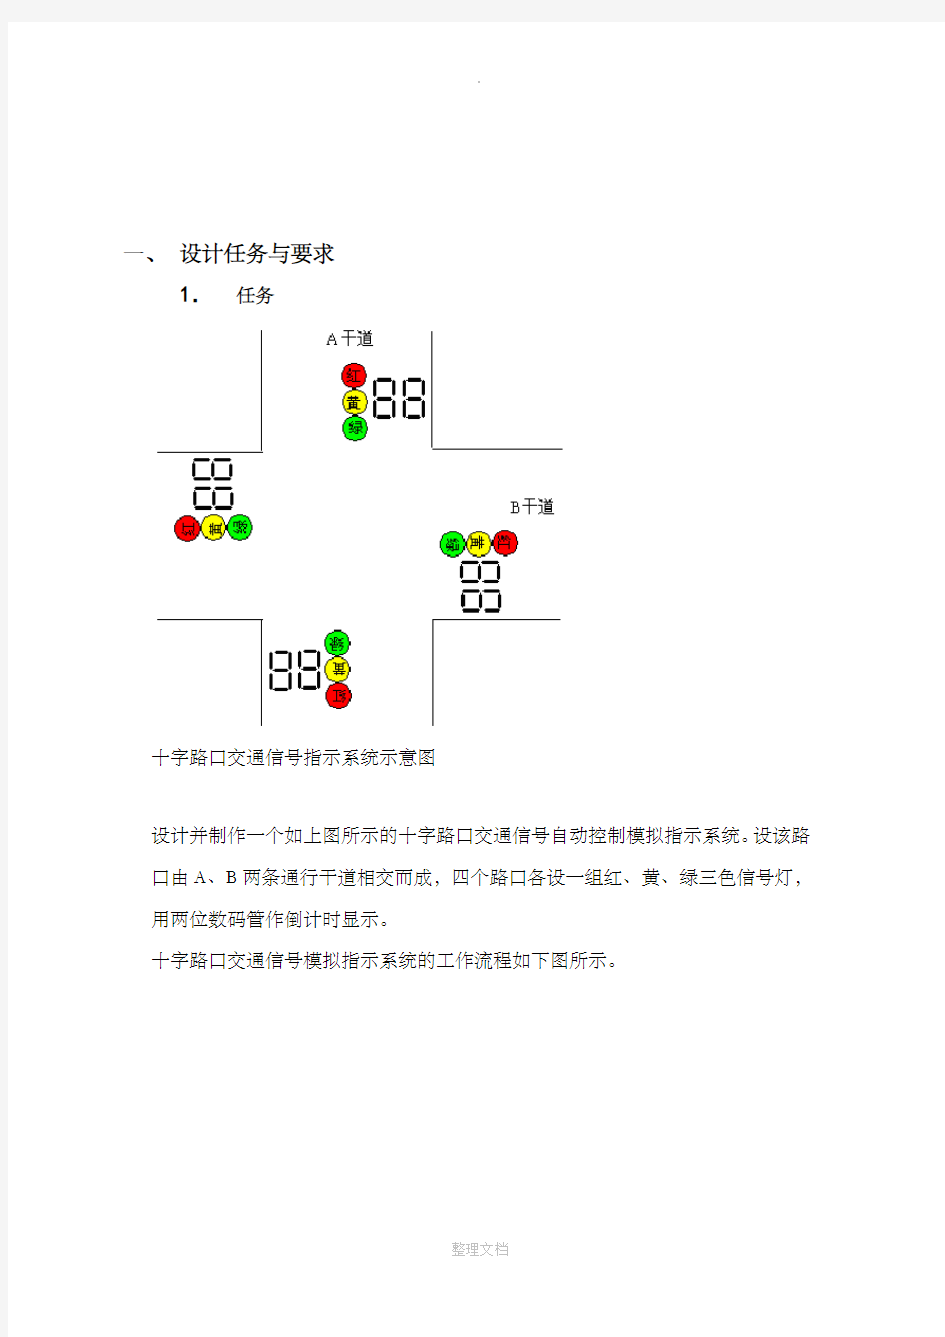 交通信号灯自动控制系统设计报告